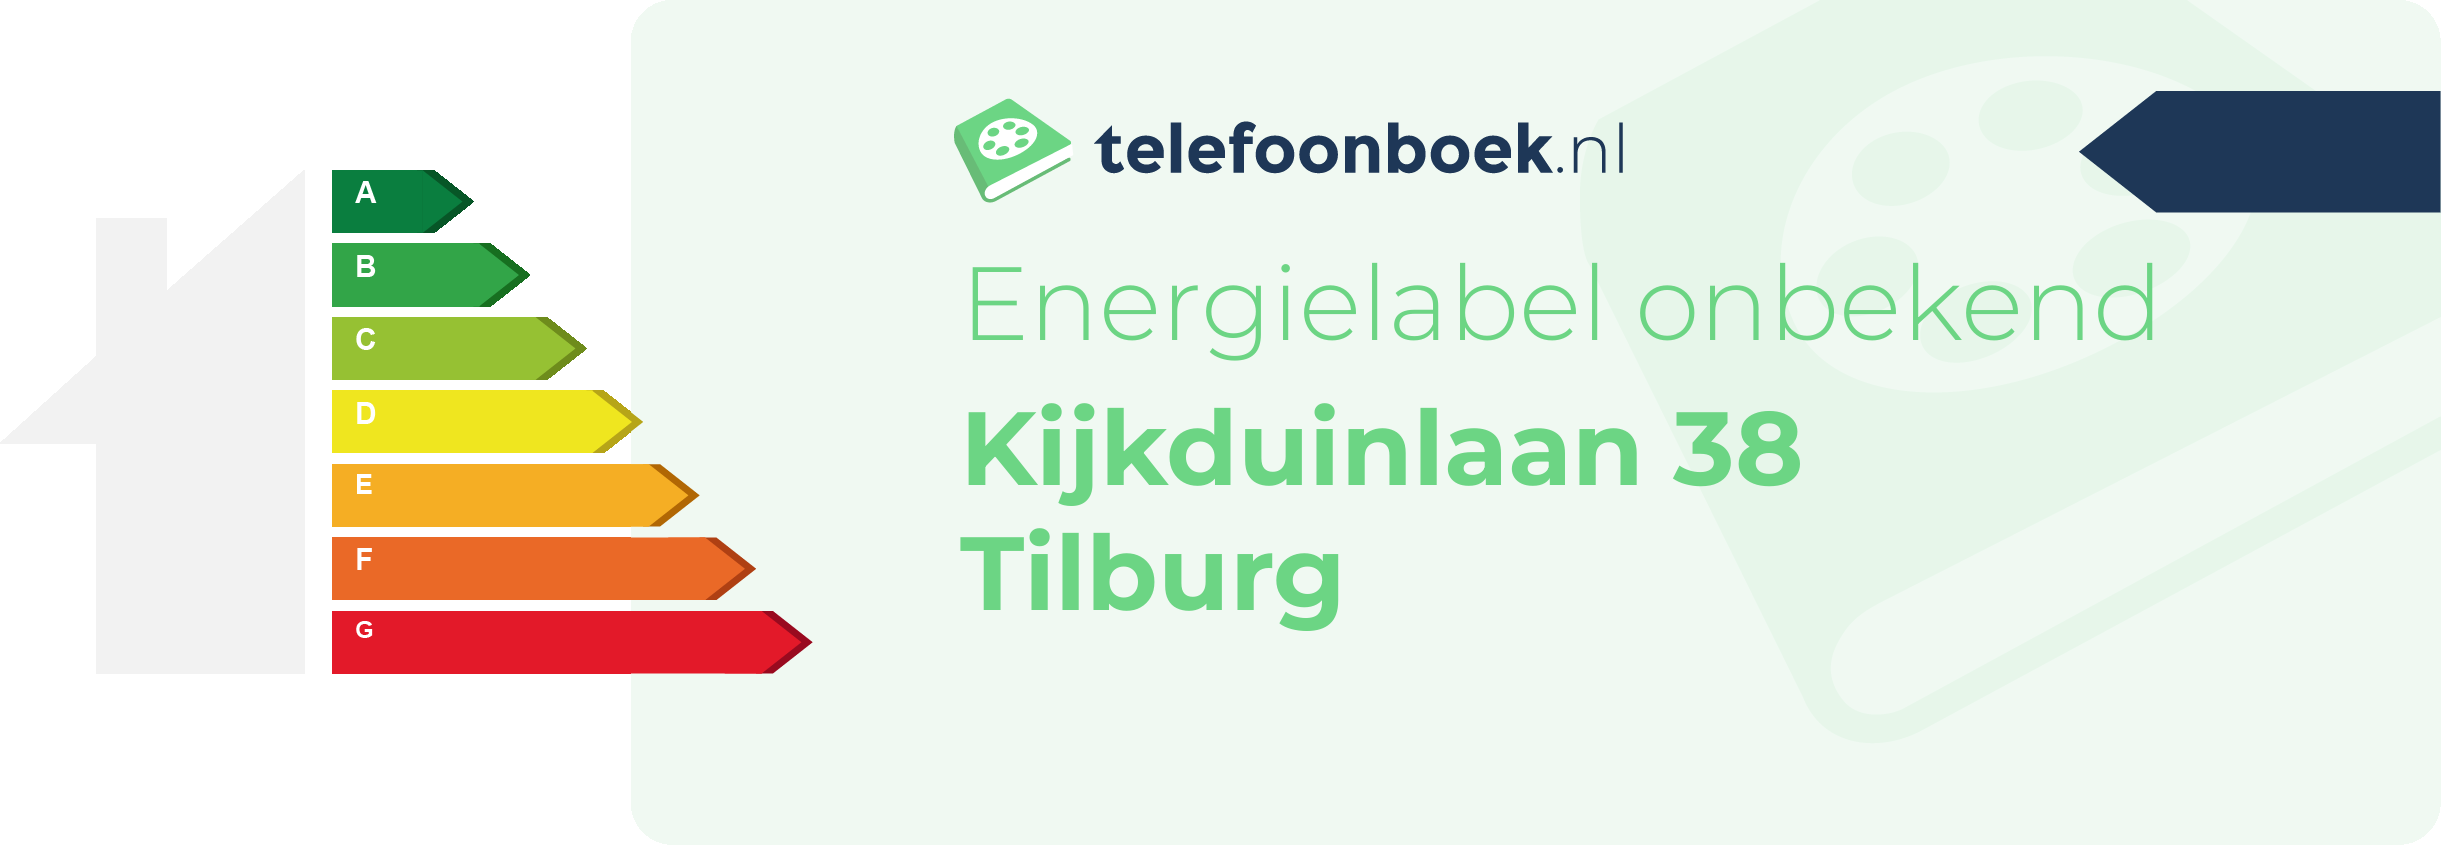 Energielabel Kijkduinlaan 38 Tilburg